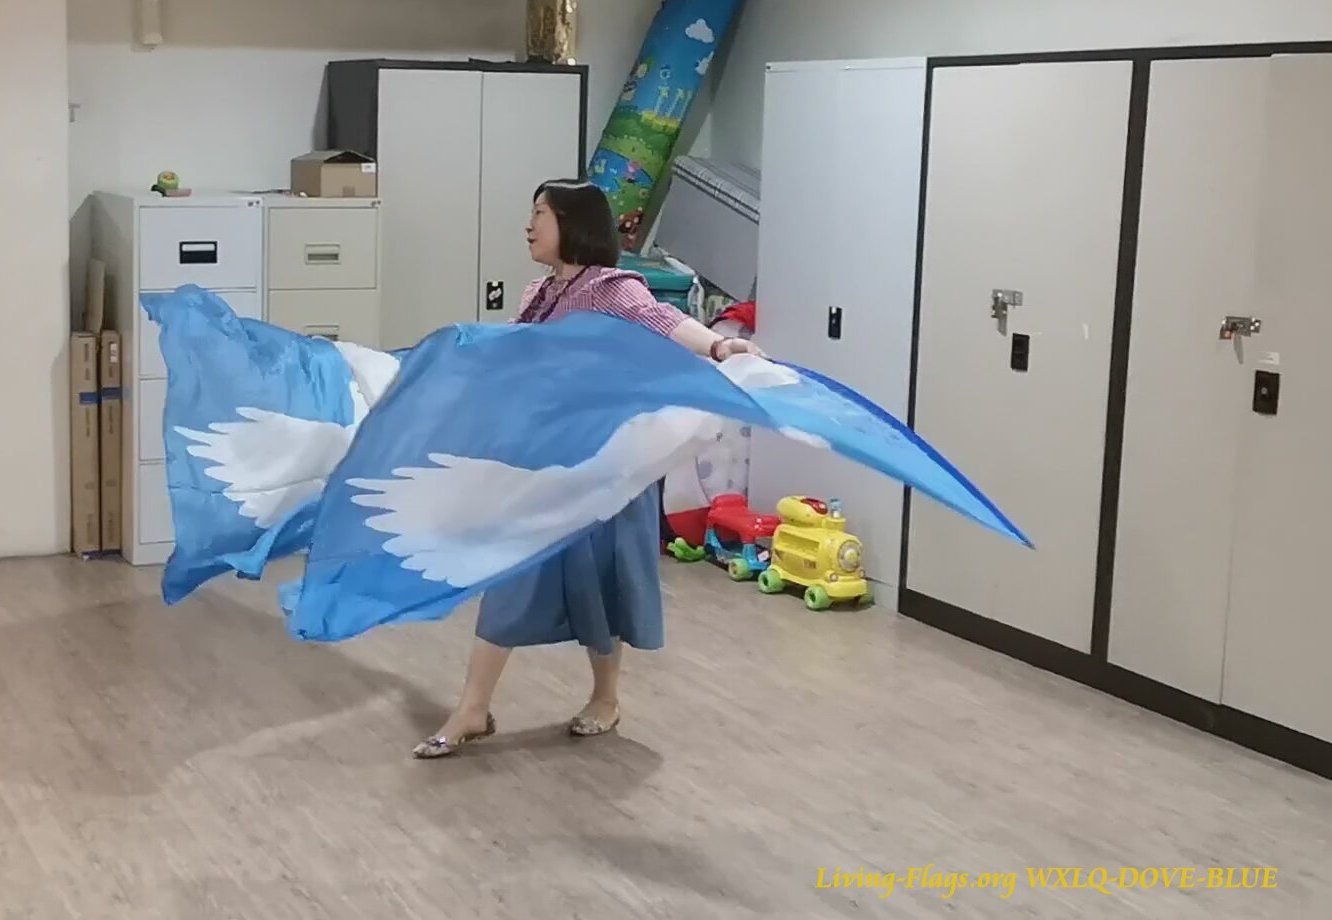 Kaufen Sie 1 Erhalten Sie 1 GRATIS - Taube (Heiliger Geist) Himmlisches Blau - Bedruckte Habotai-Seidenflügelflaggen Wxl-Federkiel